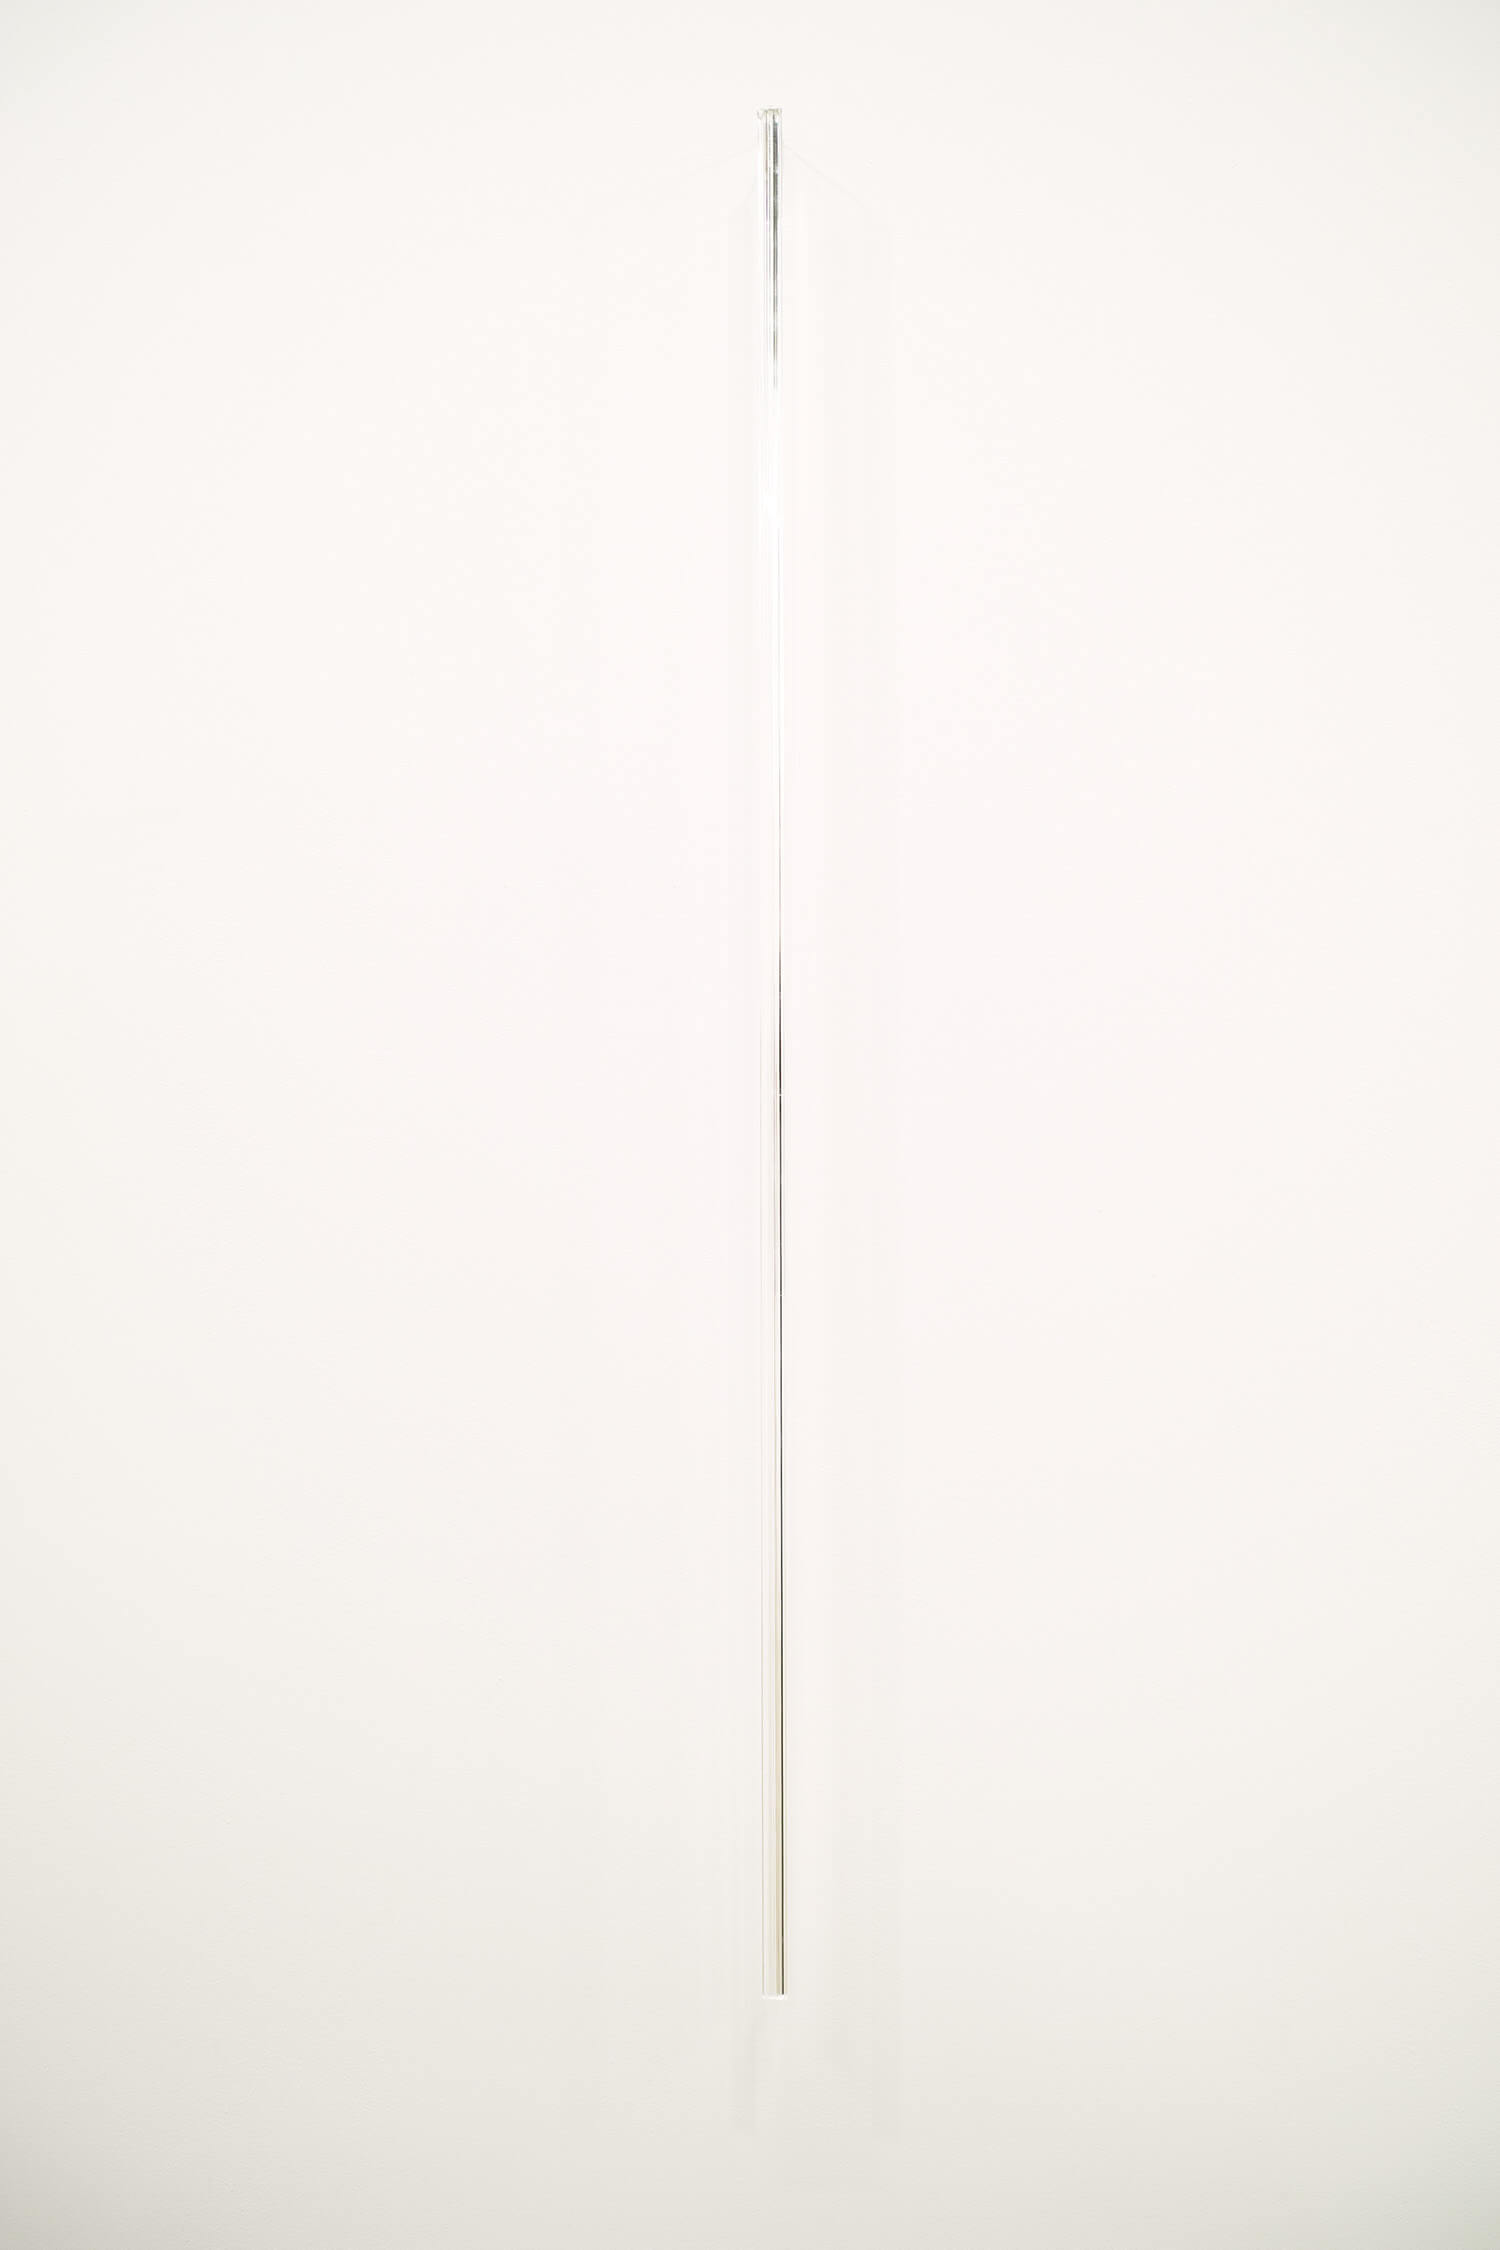 池田啓子　untitled 140328_2　透明アクリル棒（三角柱）、真鍮　7 x 14 x 900 mm　2014